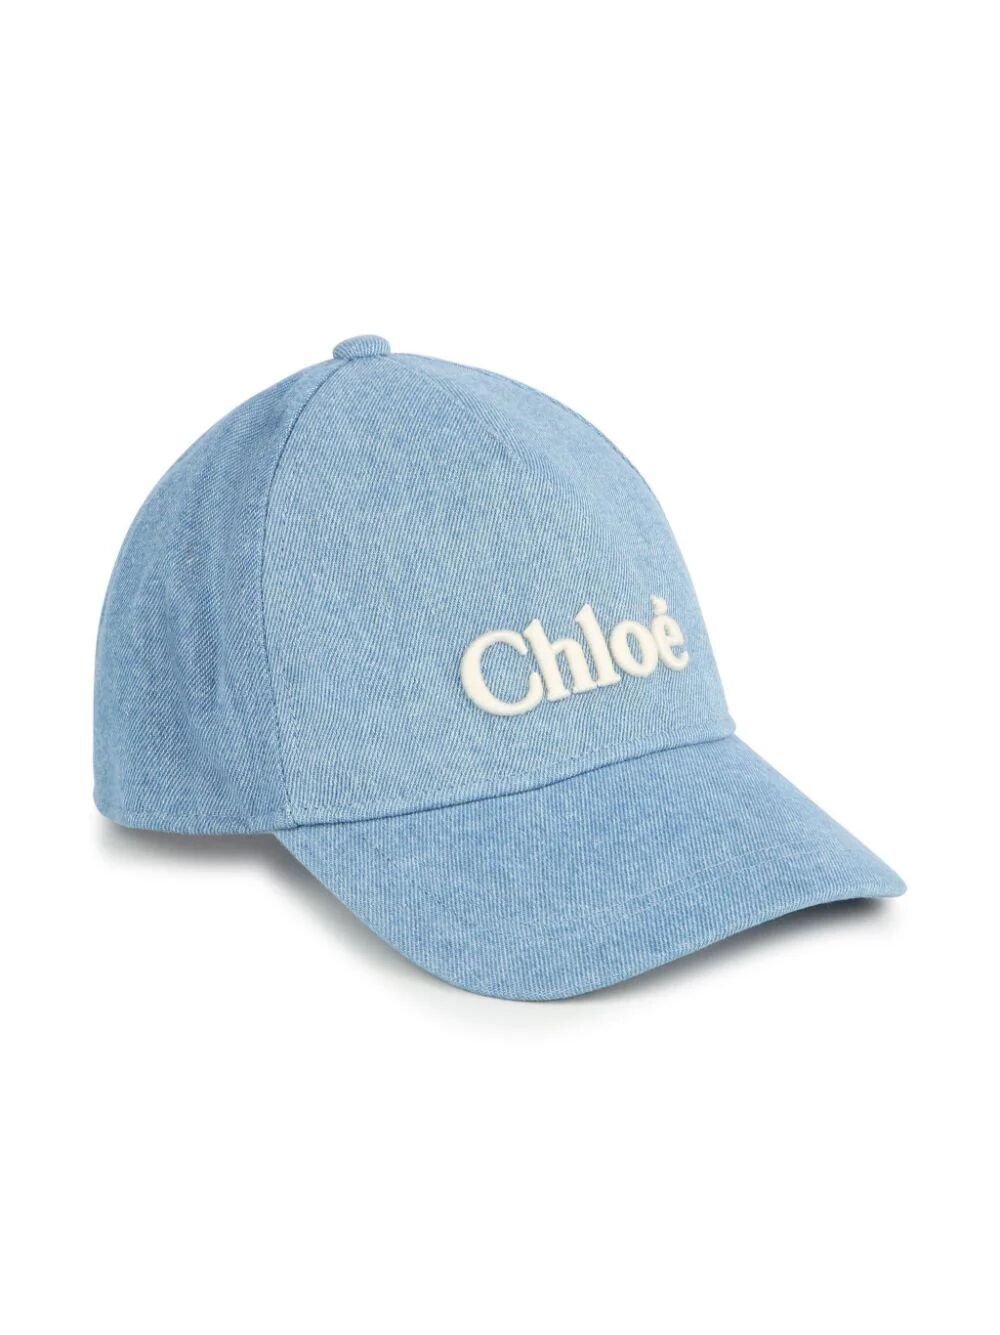 Chloé Embroidered Denim Cap In Blue